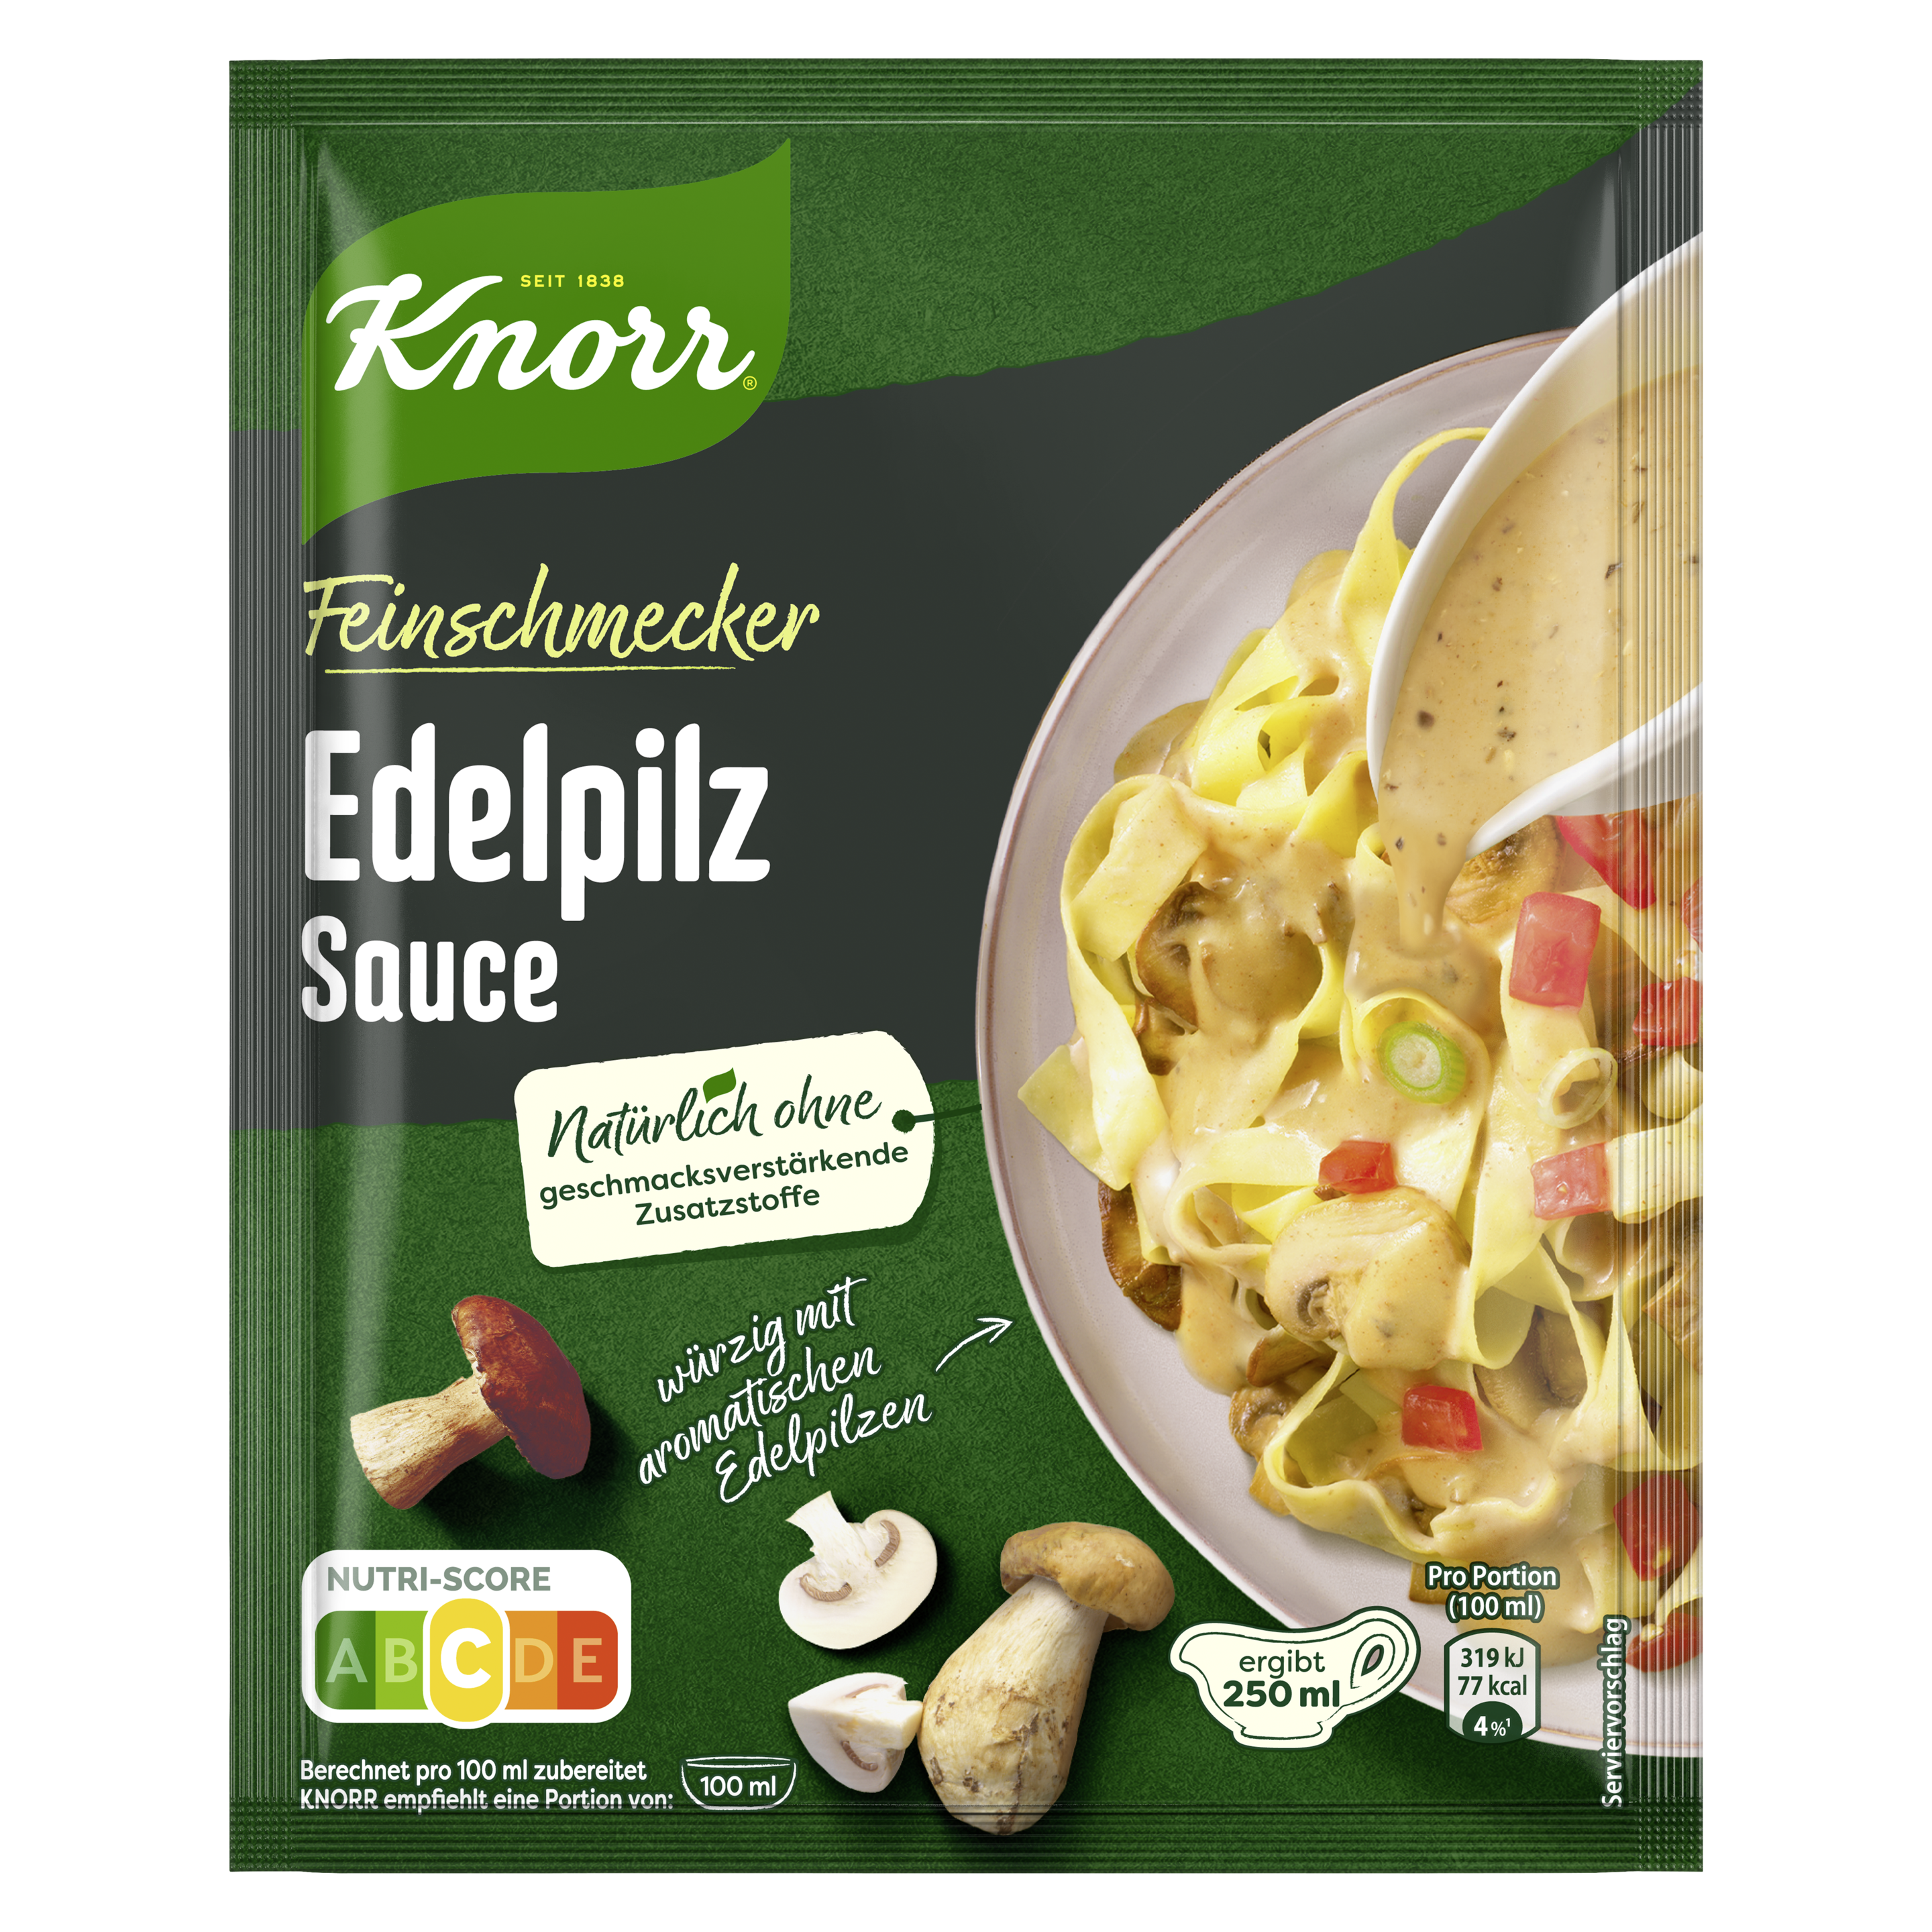 Knorr Feinschmecker Edelpilz Sauce ergibt 250 ml